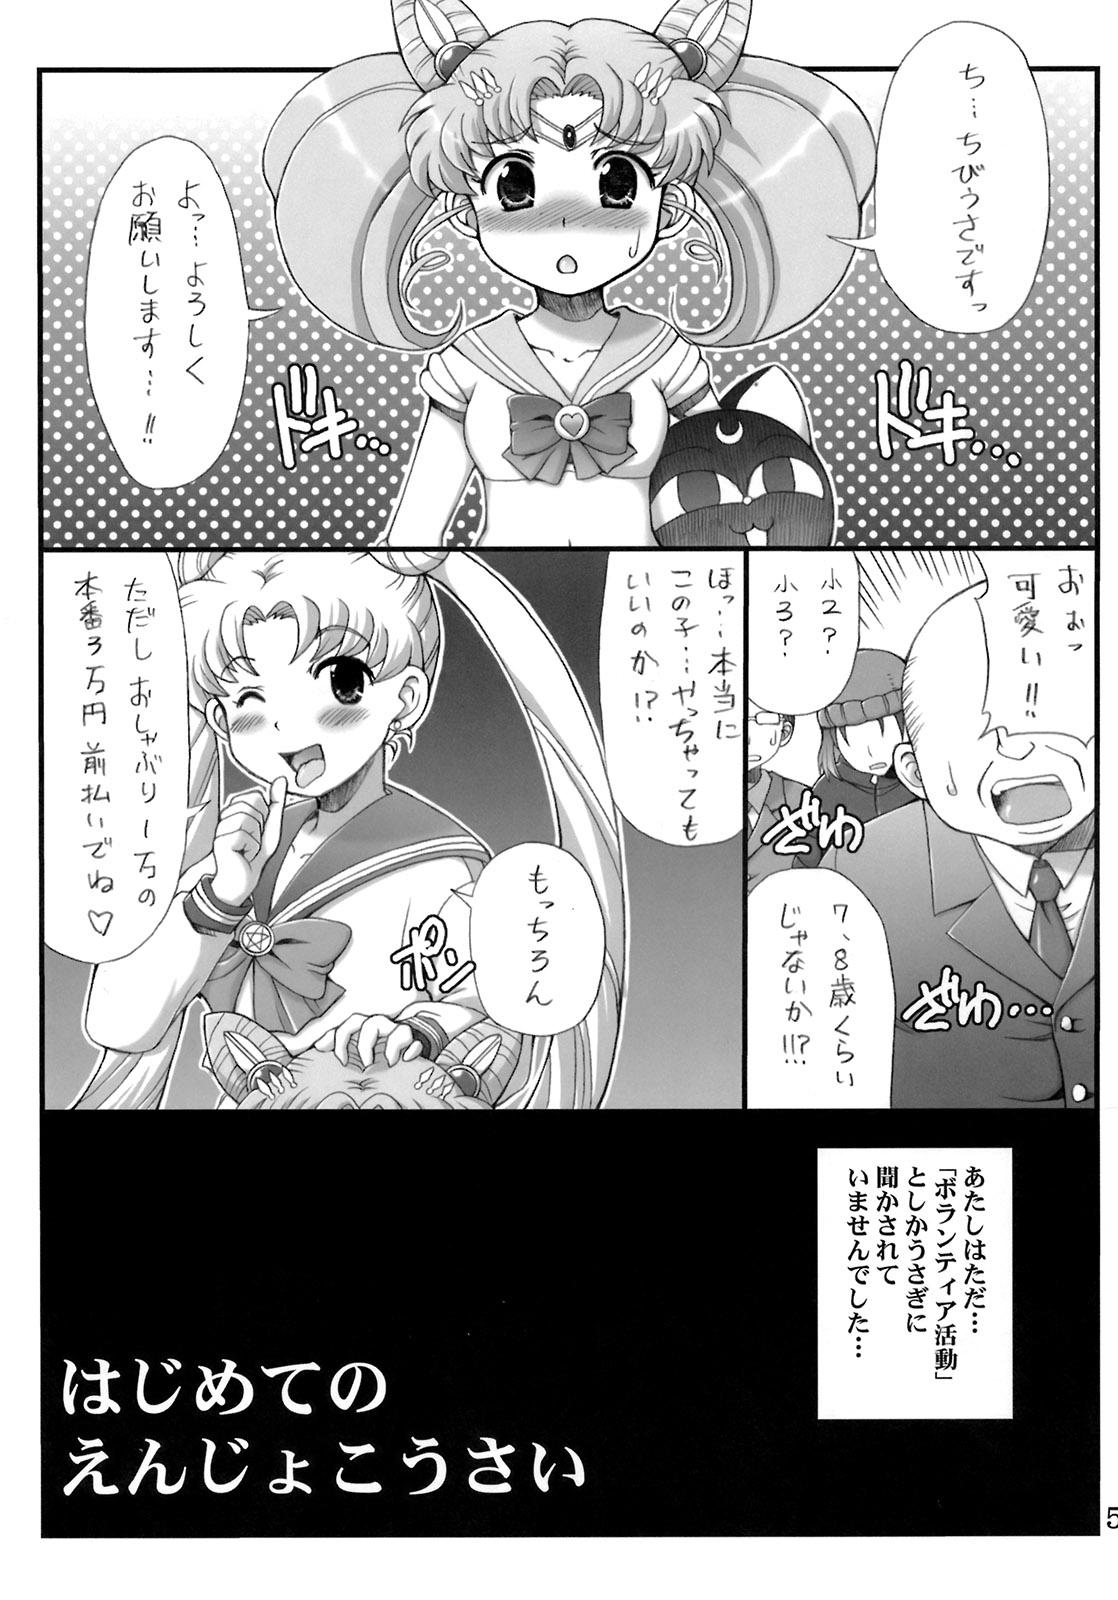 Sister Lovely Battle Suit HALF & HALF - Sailor moon Sakura taisen Tats - Page 4